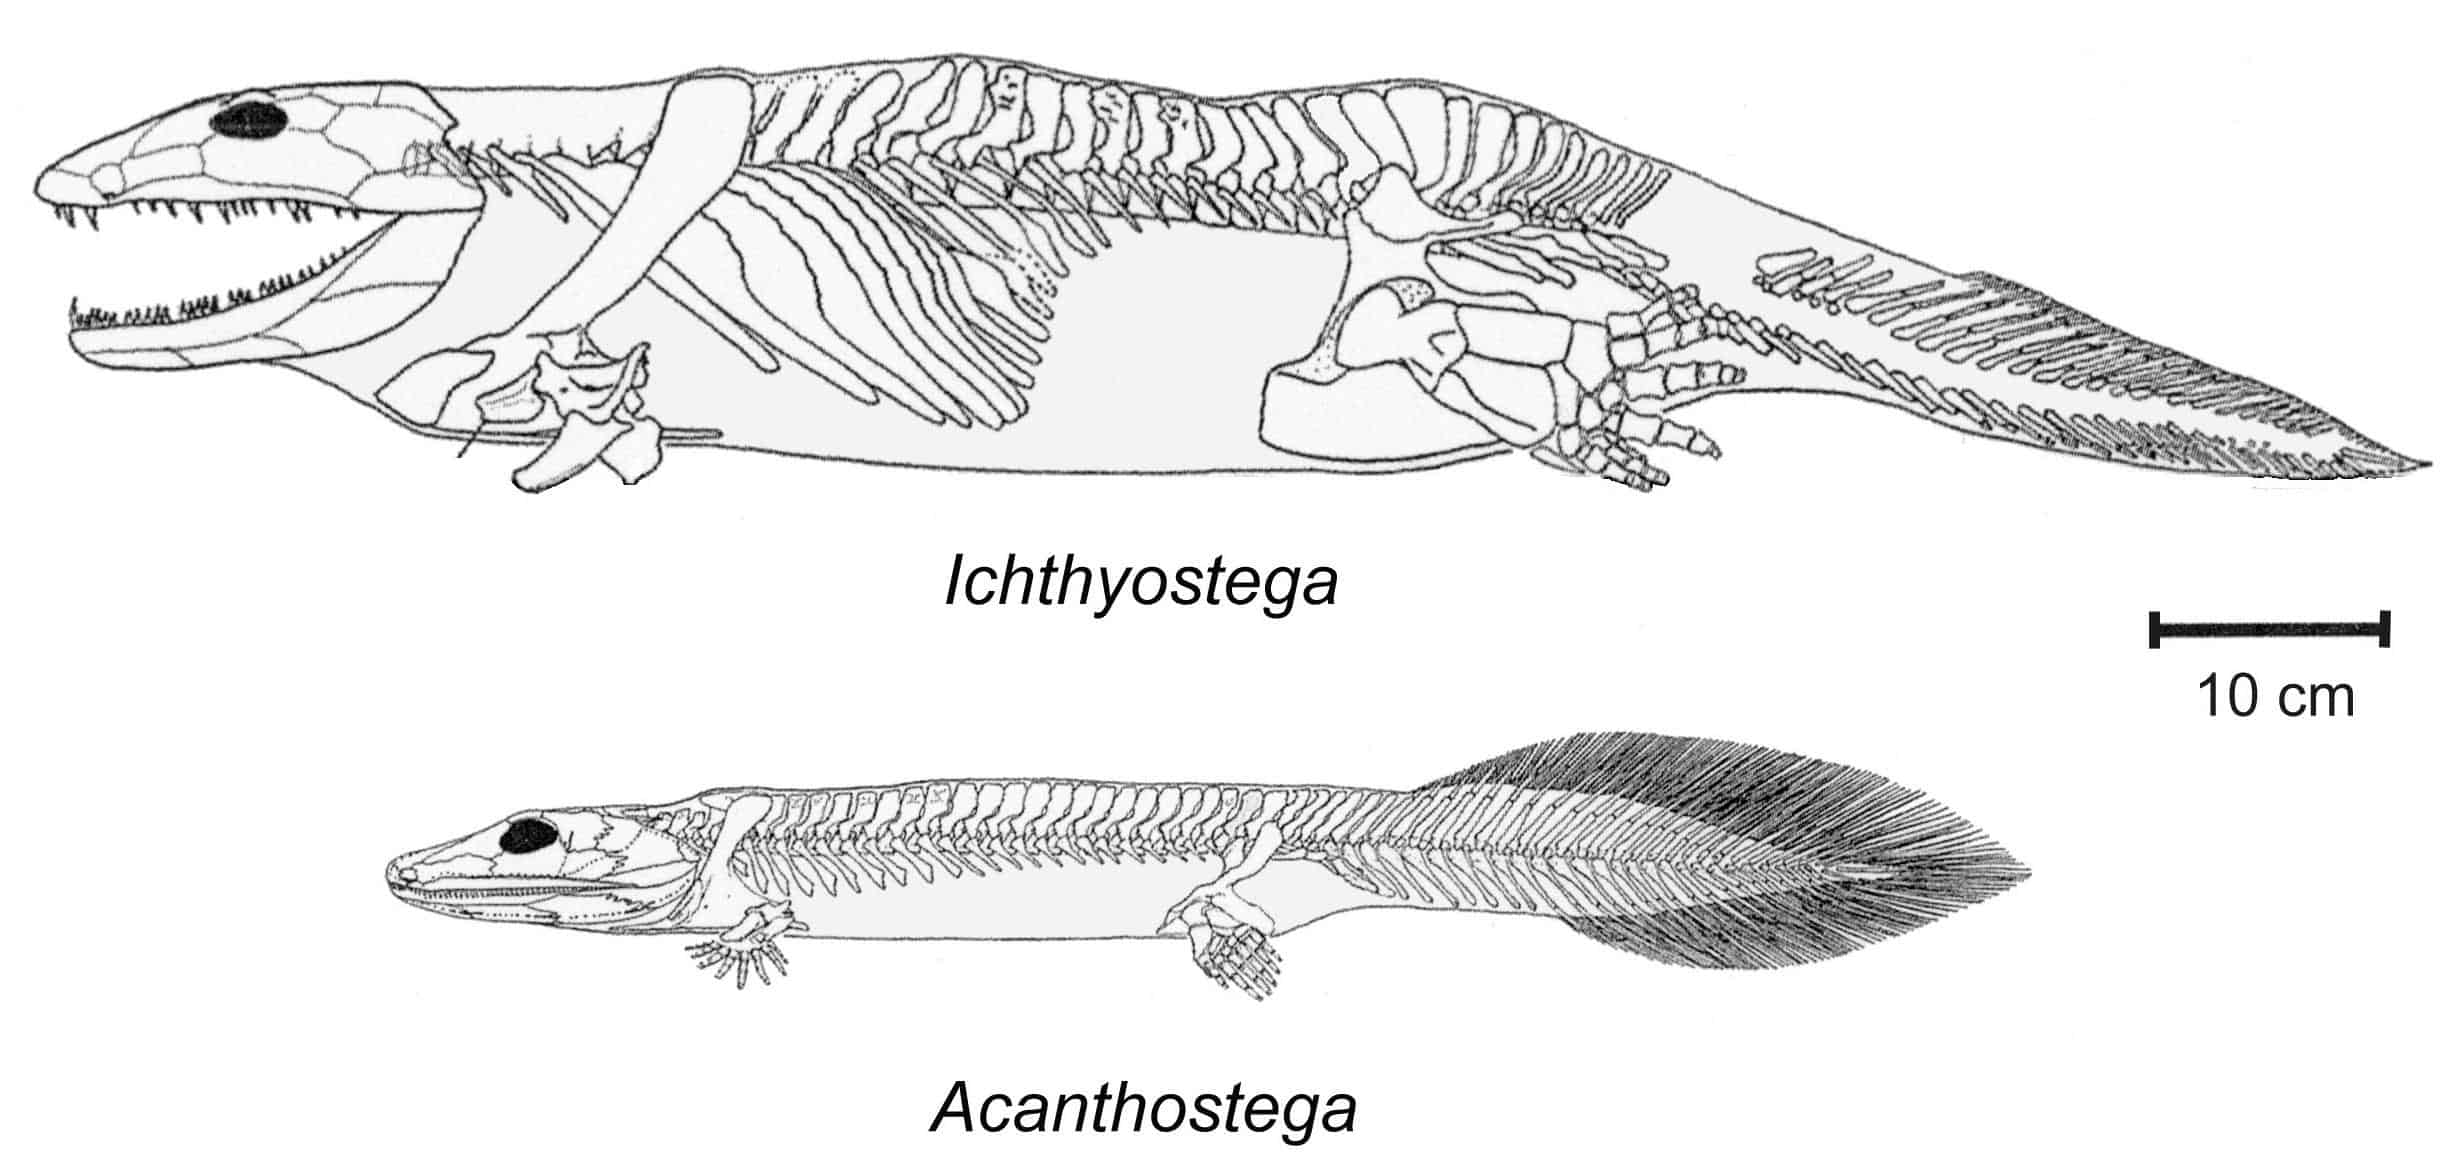 ichthyostega